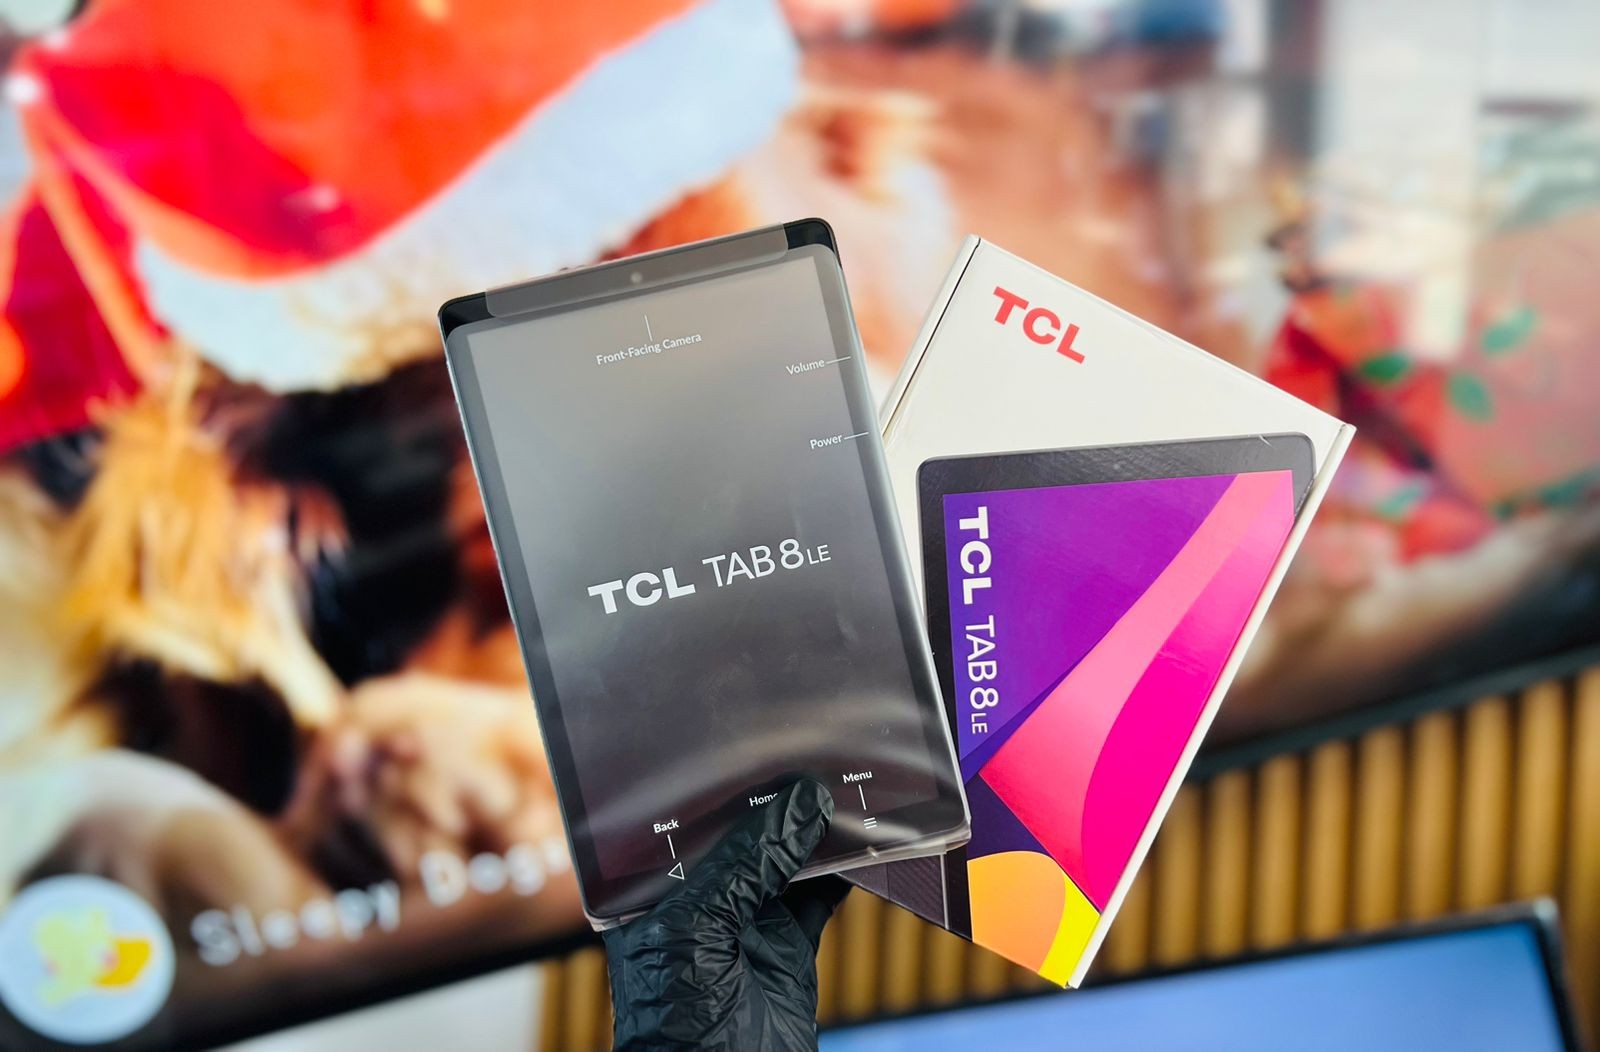 celulares y tabletas - TABLET TCL TAB 8 LE DE CHIP 32 gb nueva 4